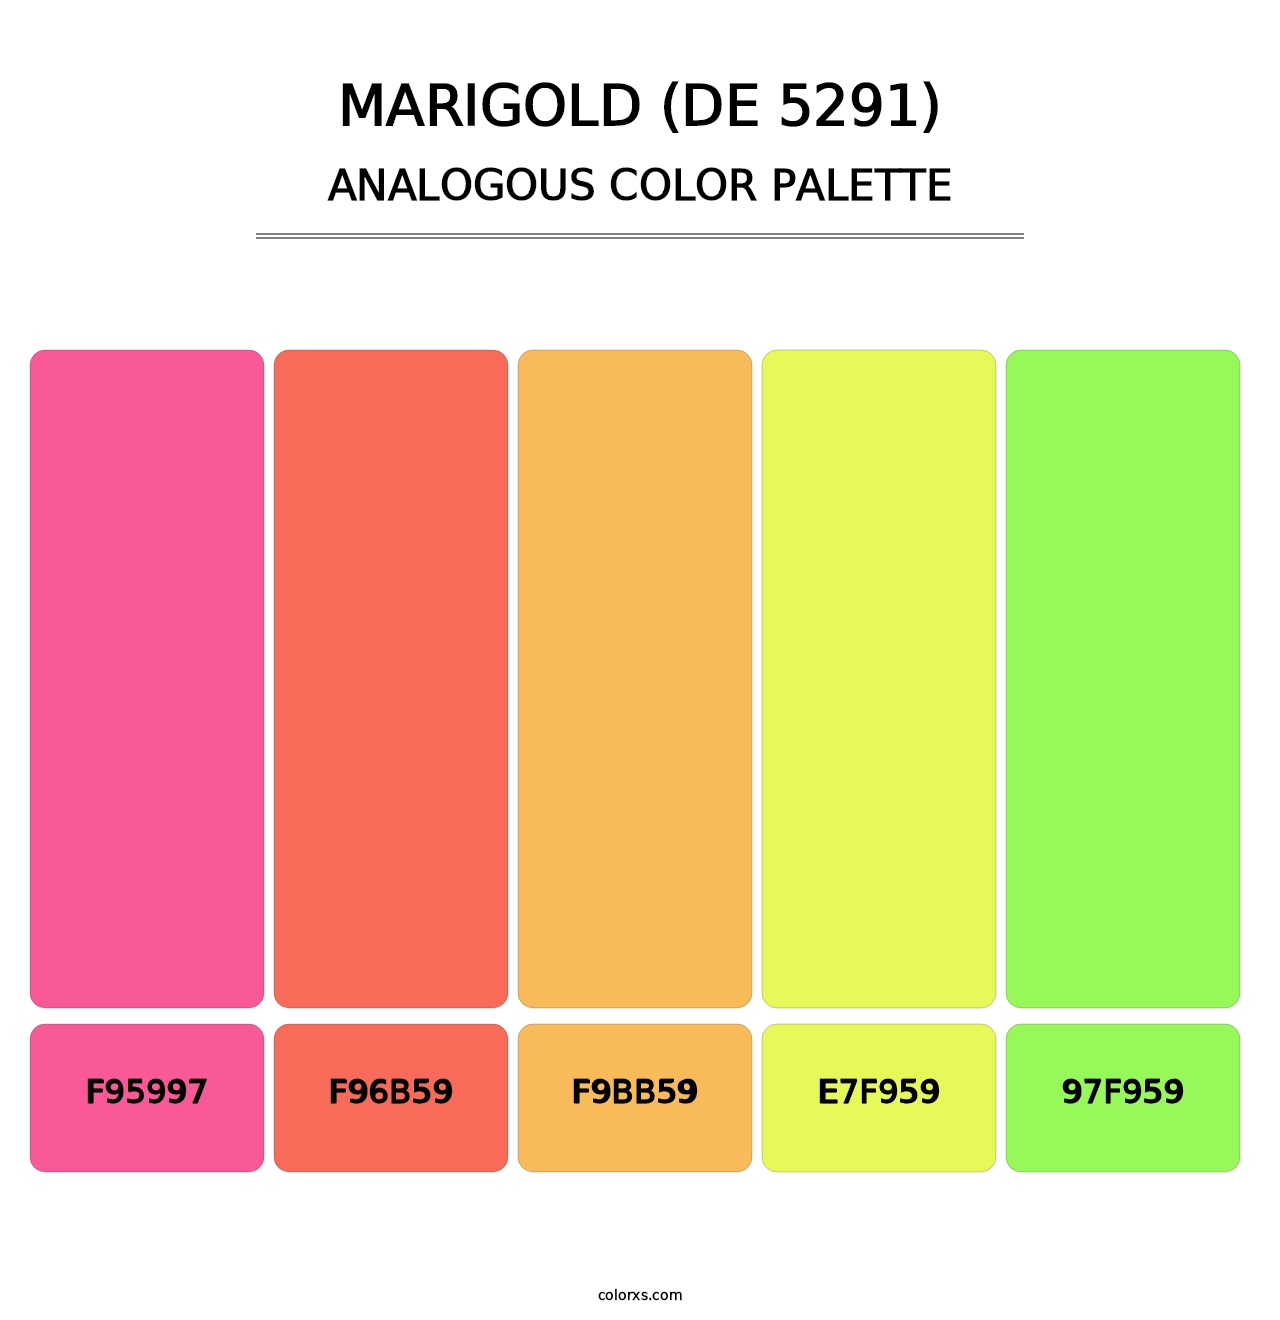 Marigold (DE 5291) - Analogous Color Palette